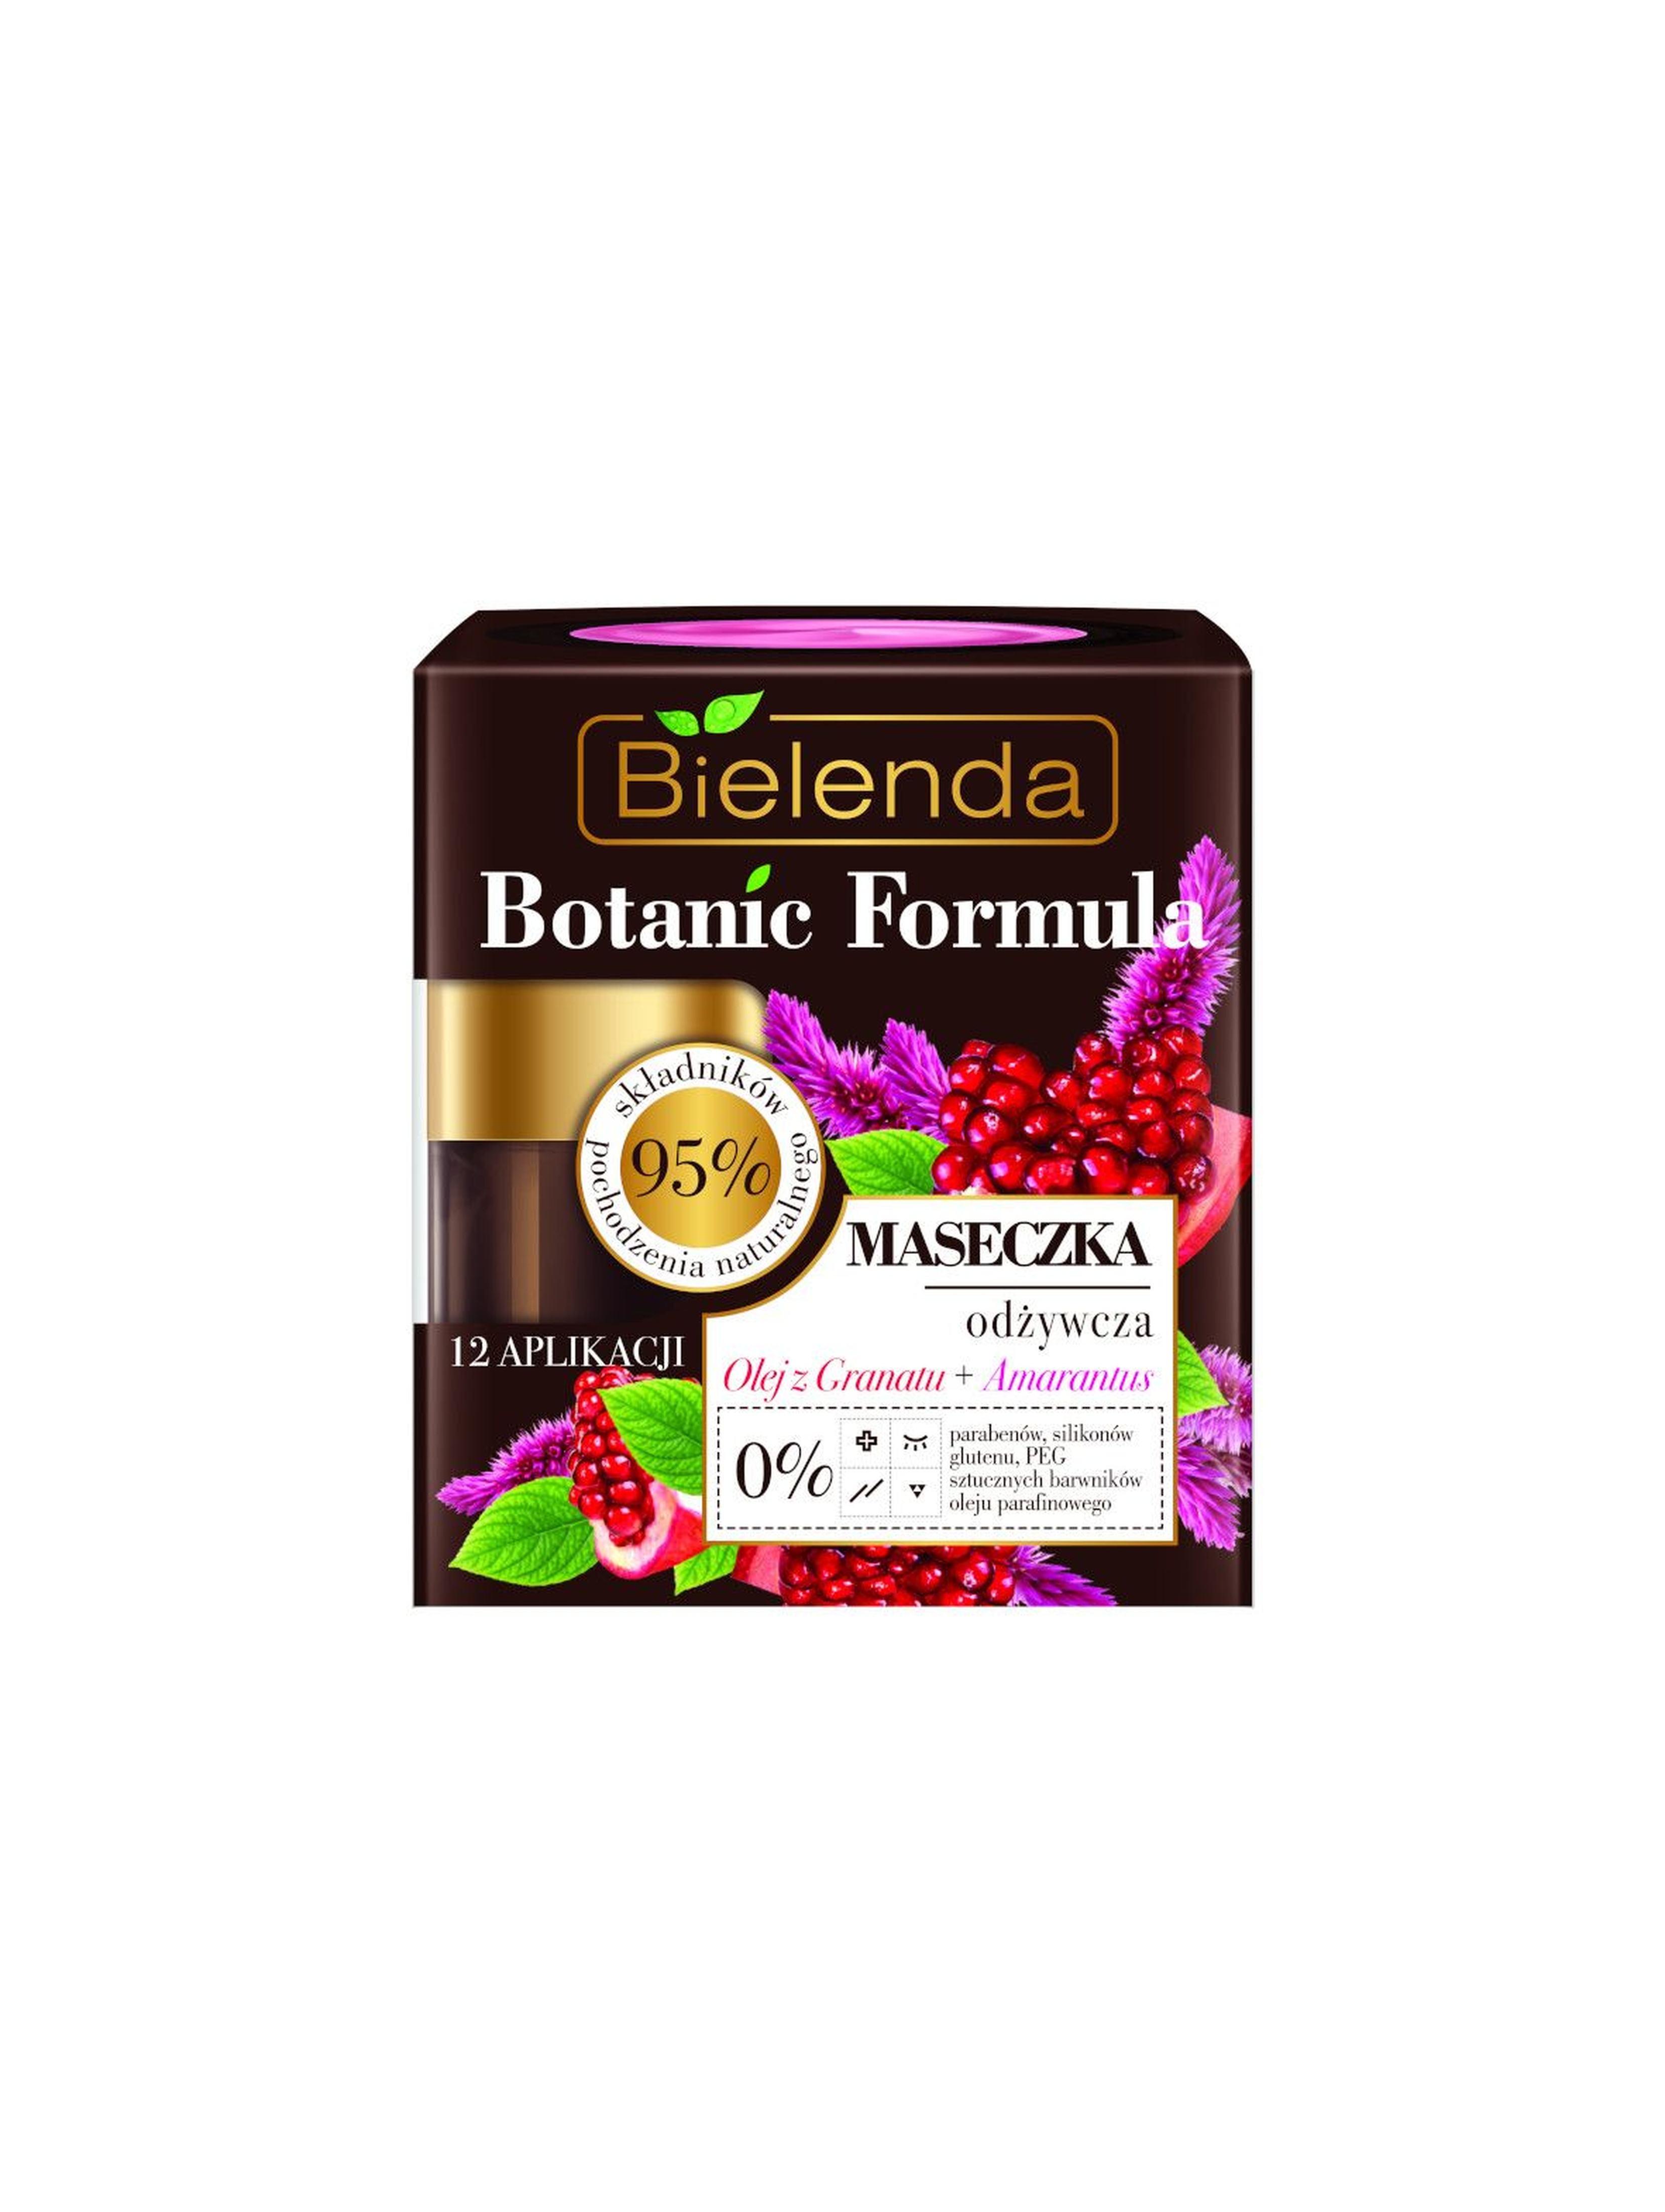 BOTANIC FORMULA Olej z Granatu + Amarantus Maseczka odżywcza Bielenda - 50 ml